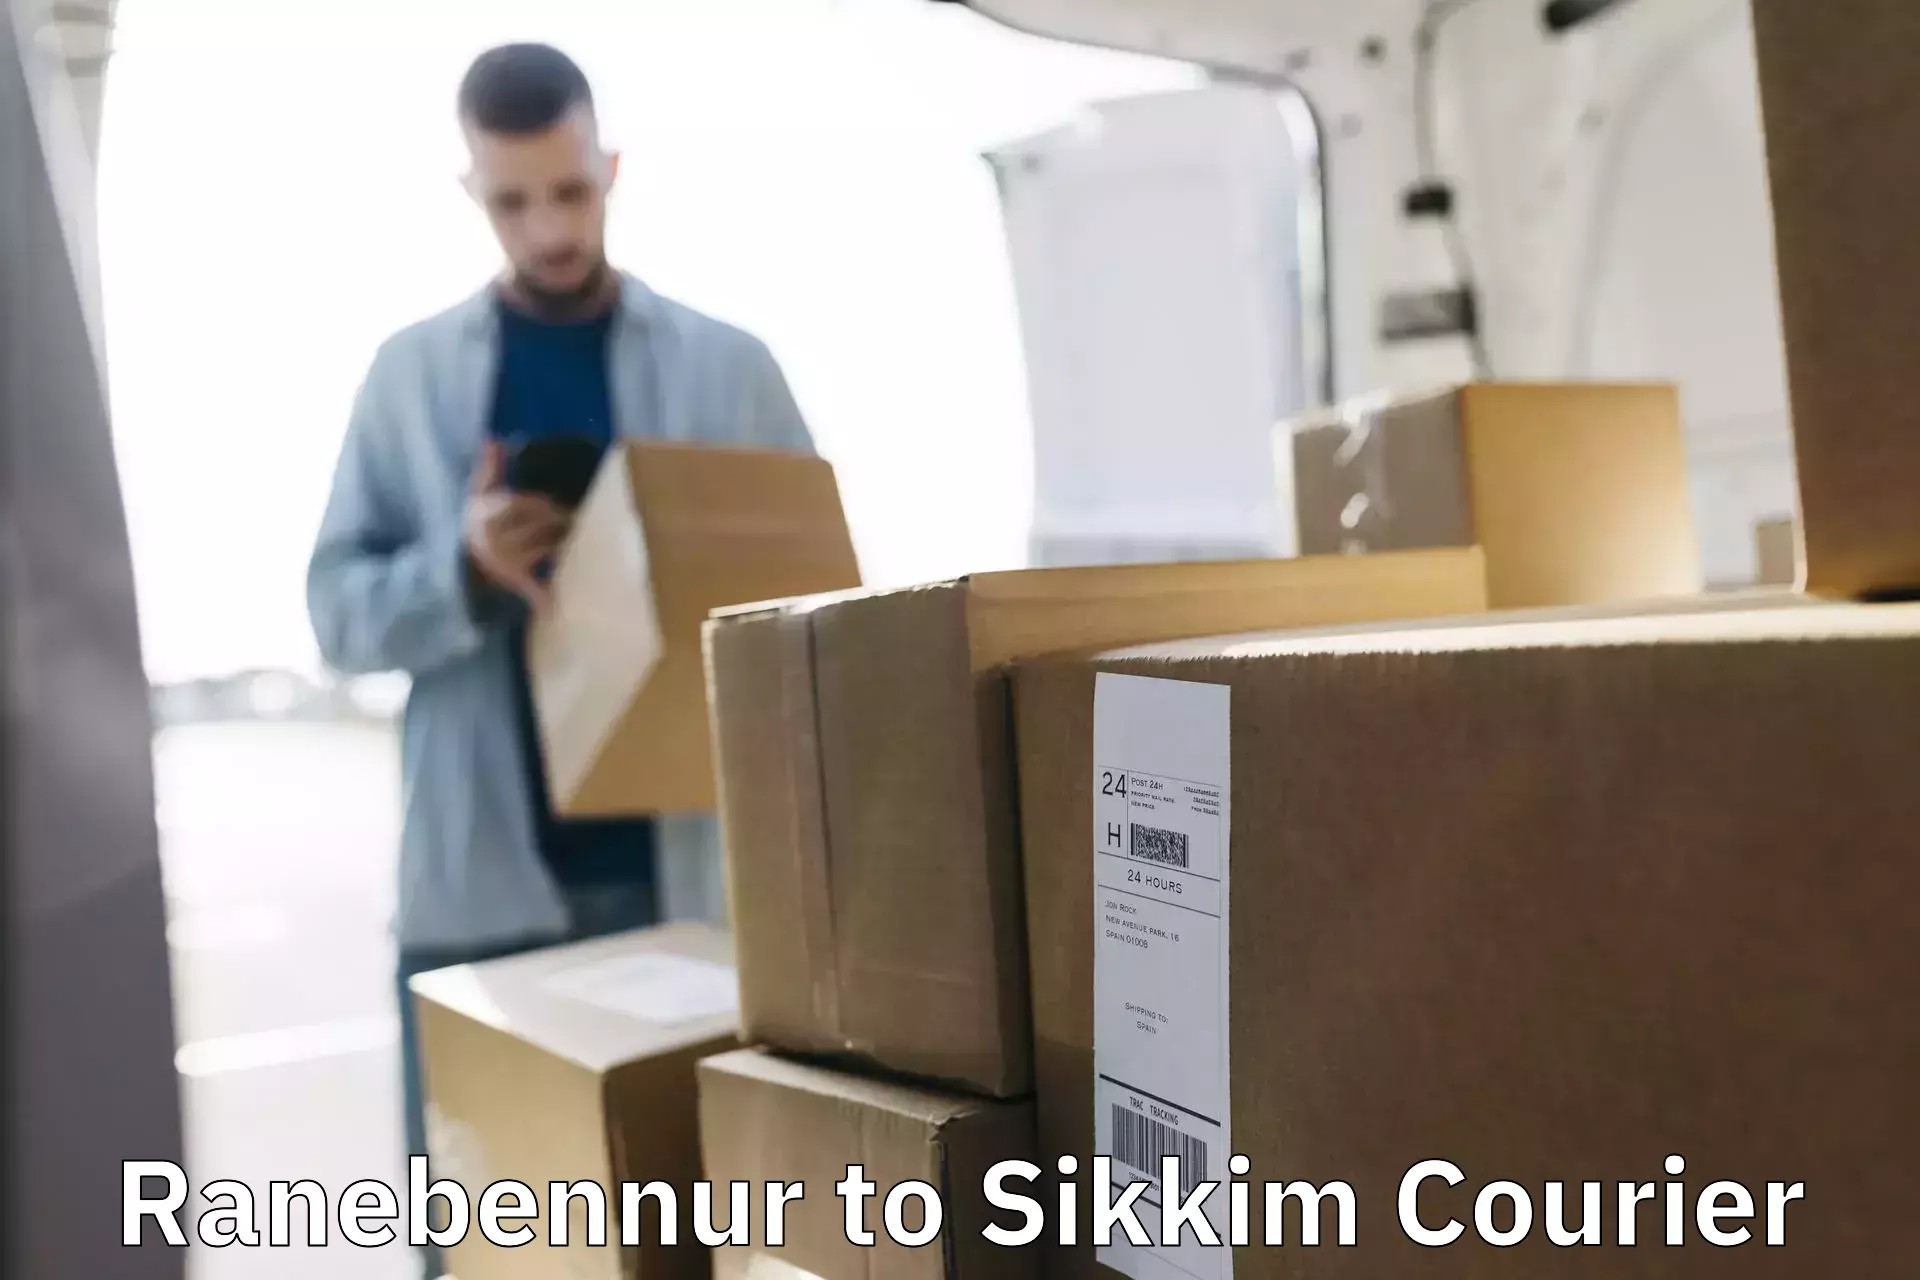 User-friendly courier app Ranebennur to Sikkim